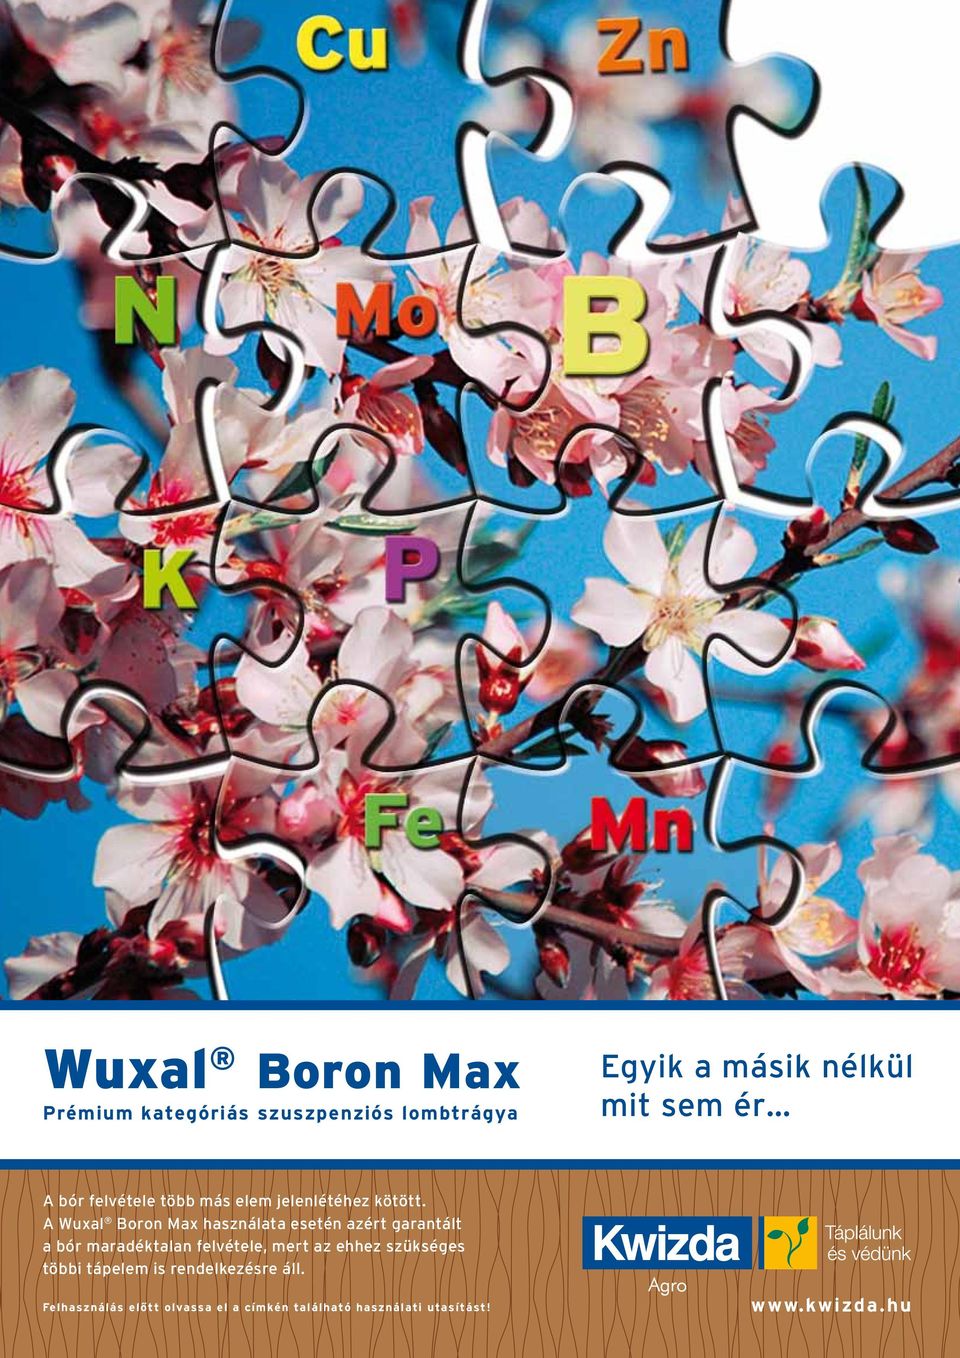 A Wuxal Boron Max használata esetén azért garantált a bór maradéktalan felvétele, mert az